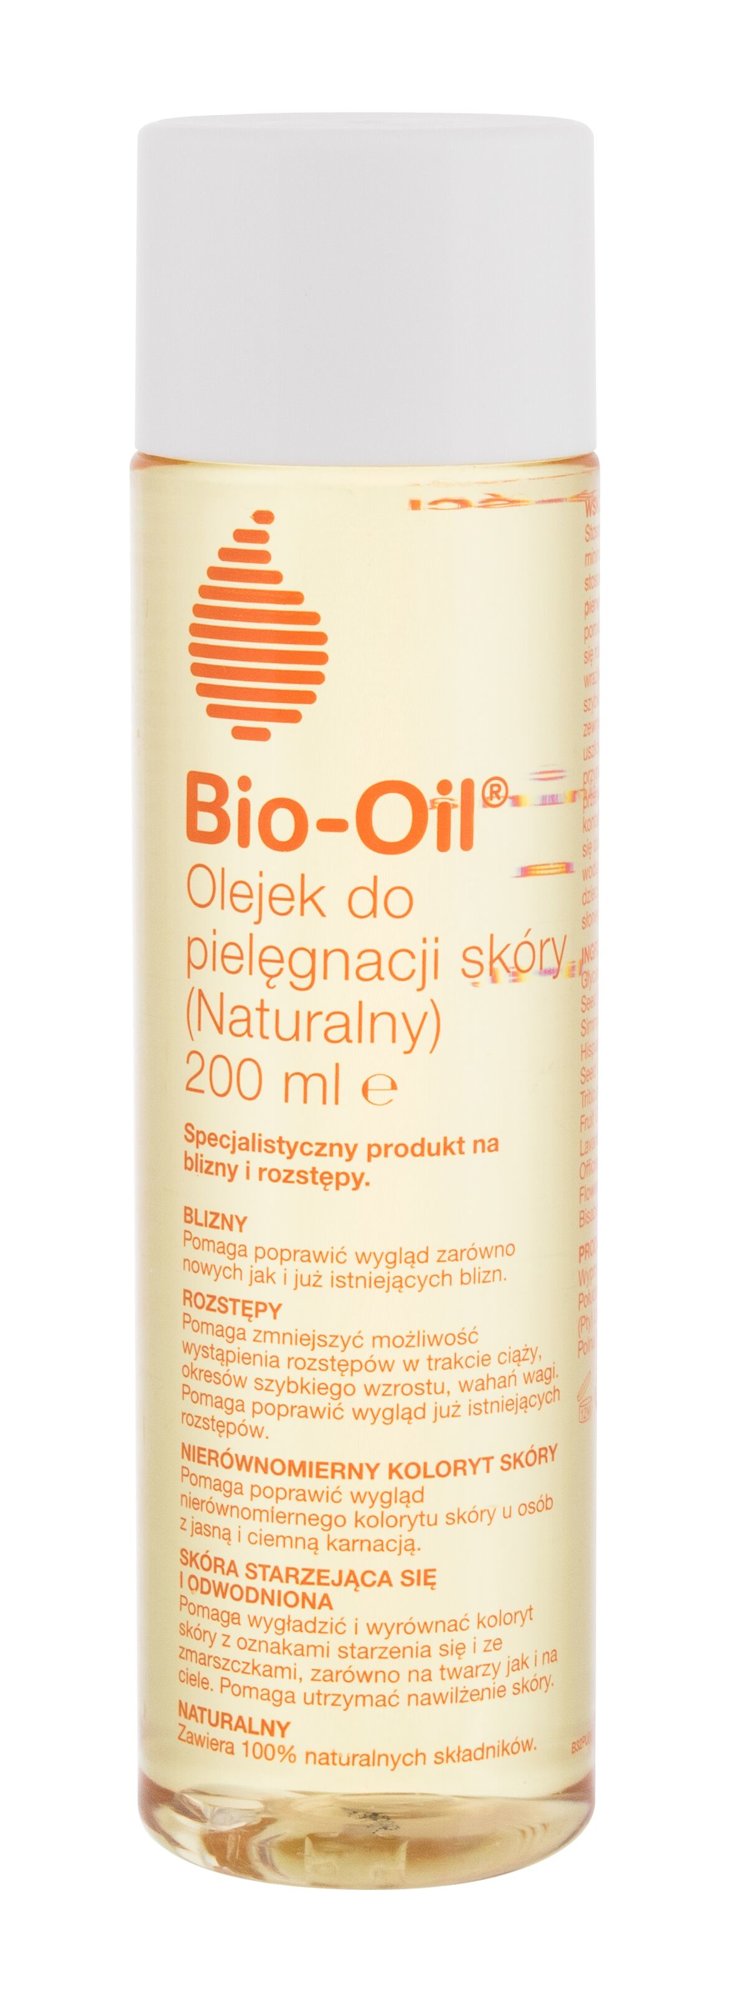 Bi-Oil Skincare Oil Natural 200ml priemonė celiulitui ir strijoms